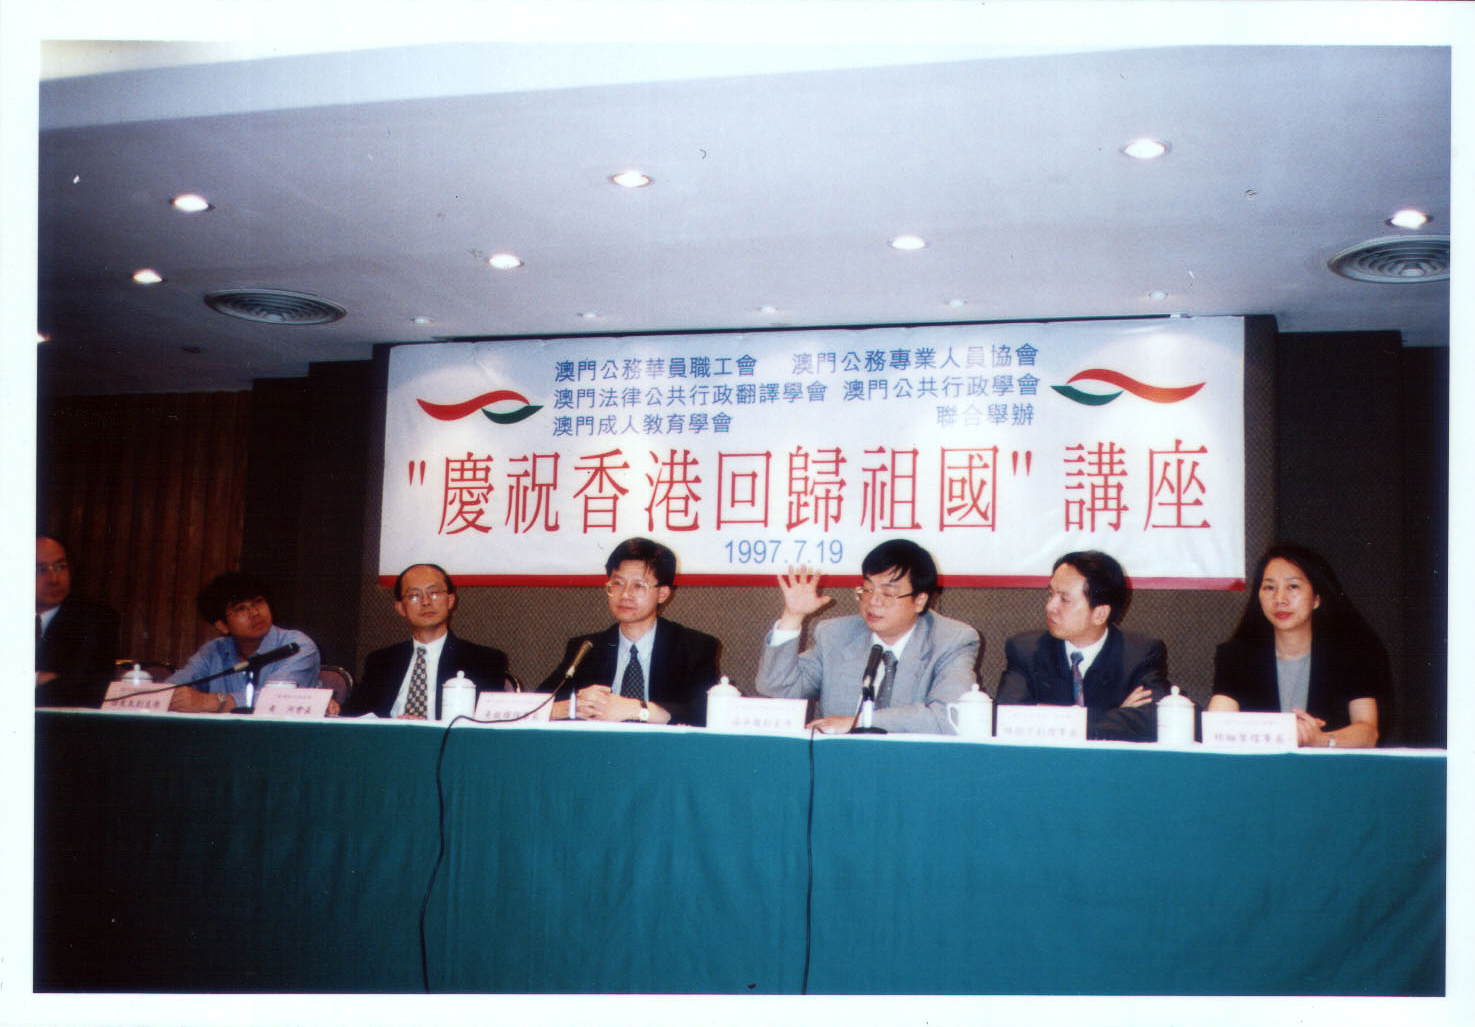 1997 與友會聯合主辦 “慶祝香港回歸祖國講座 ”